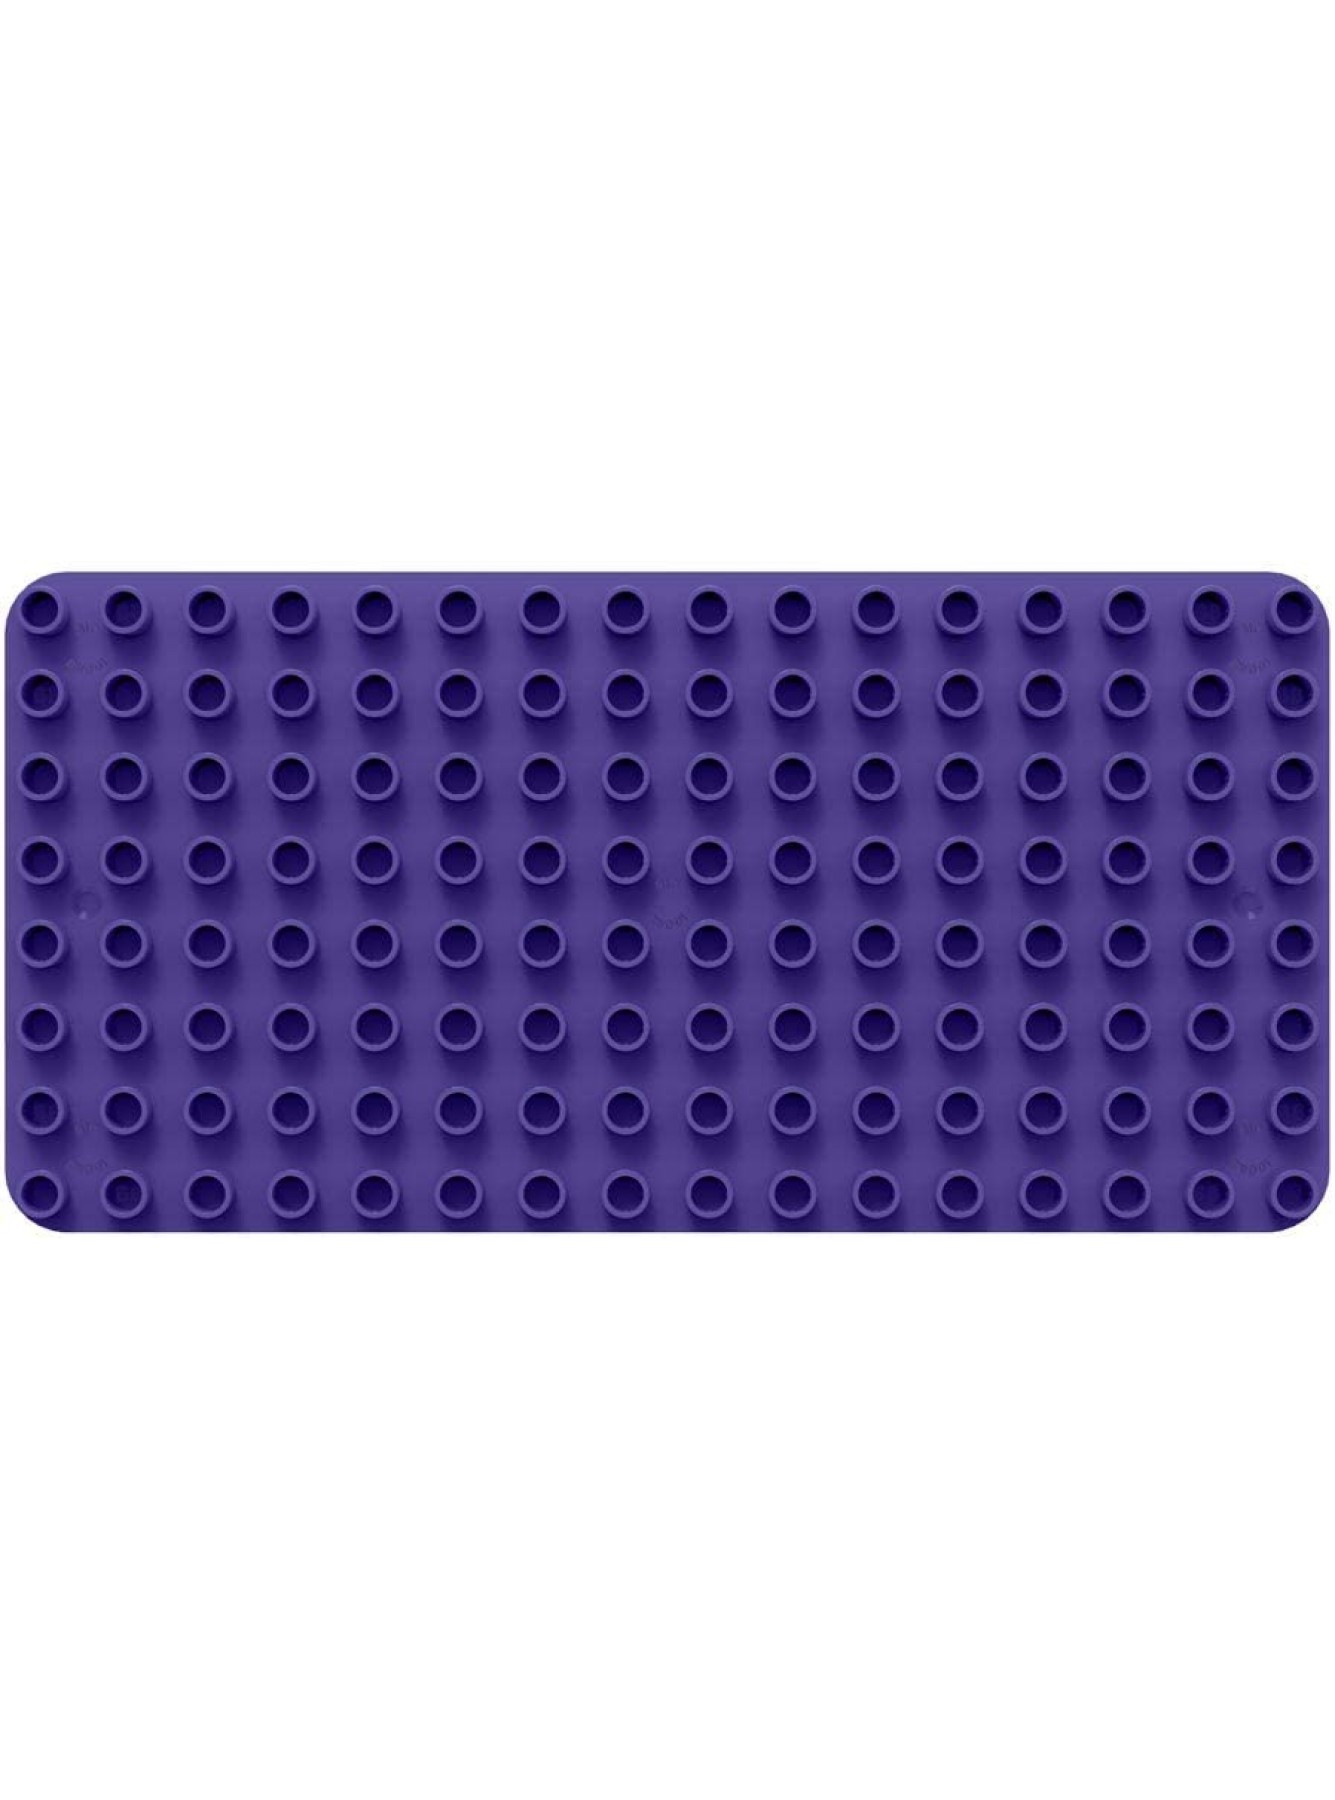 BiOBUDDi BB-0017-L Grundplatte Bausteine kompatibel zu anderen Marken hergestellt aus Bio Kunststoff Grundbauplatte in lila ca. 25,5 x 13 x 0,5 cm besonders umweltfreundlich - B0793G9KQV